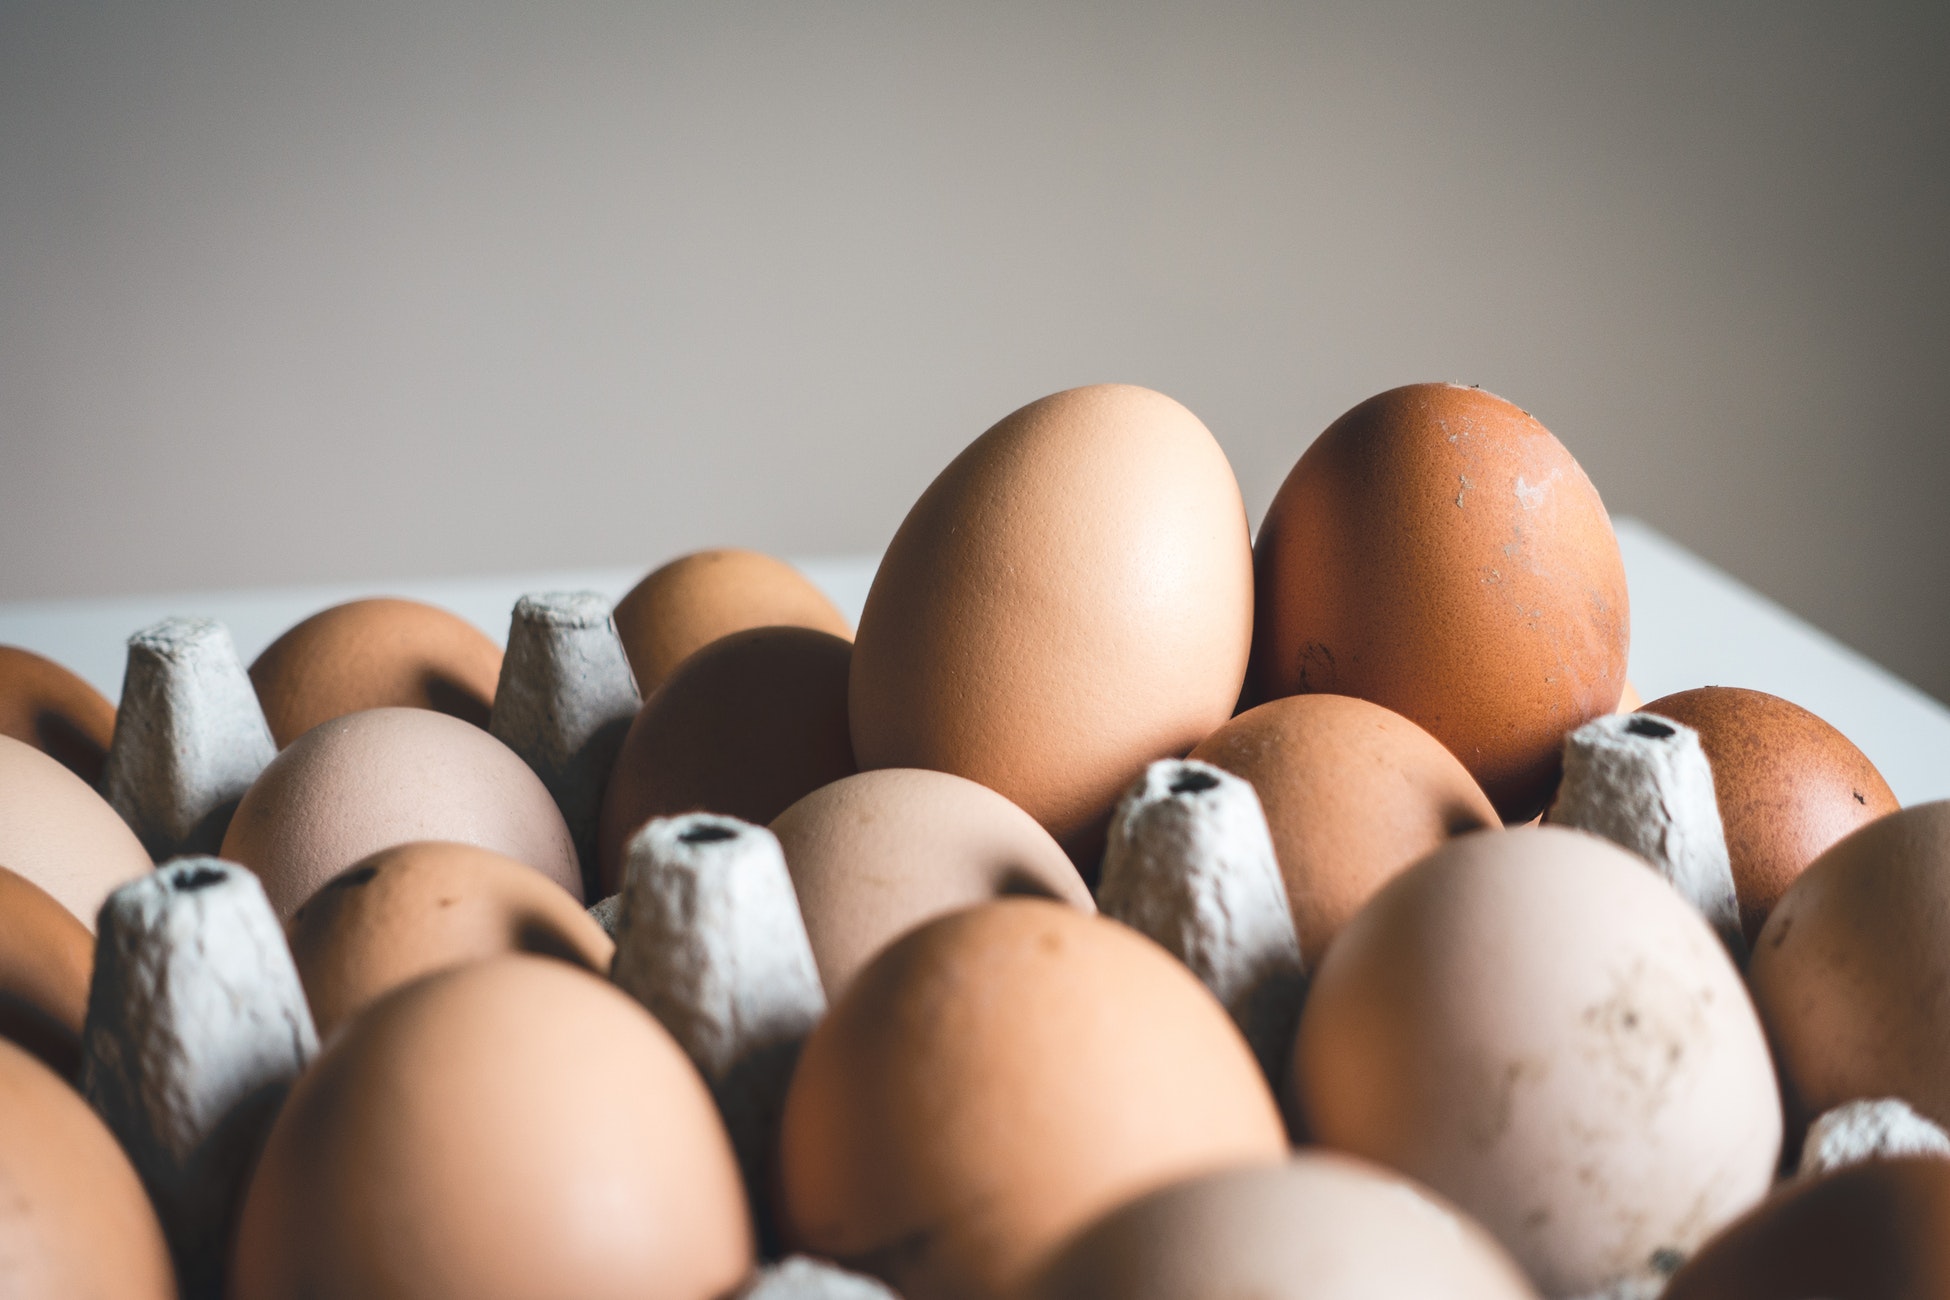 Ein grosser Eierkarton mit vielen braunen Eiern.